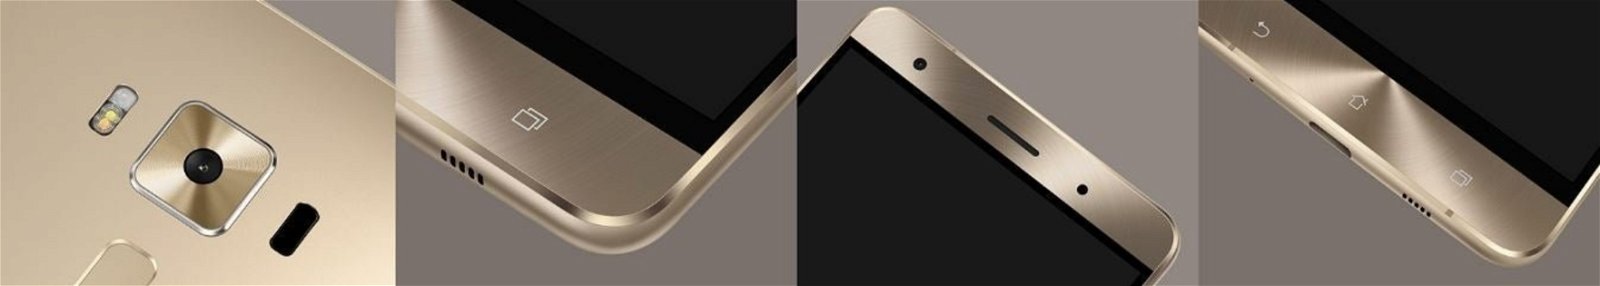 ASUS Zenfone 3 Deluxe, imágenes del diseño